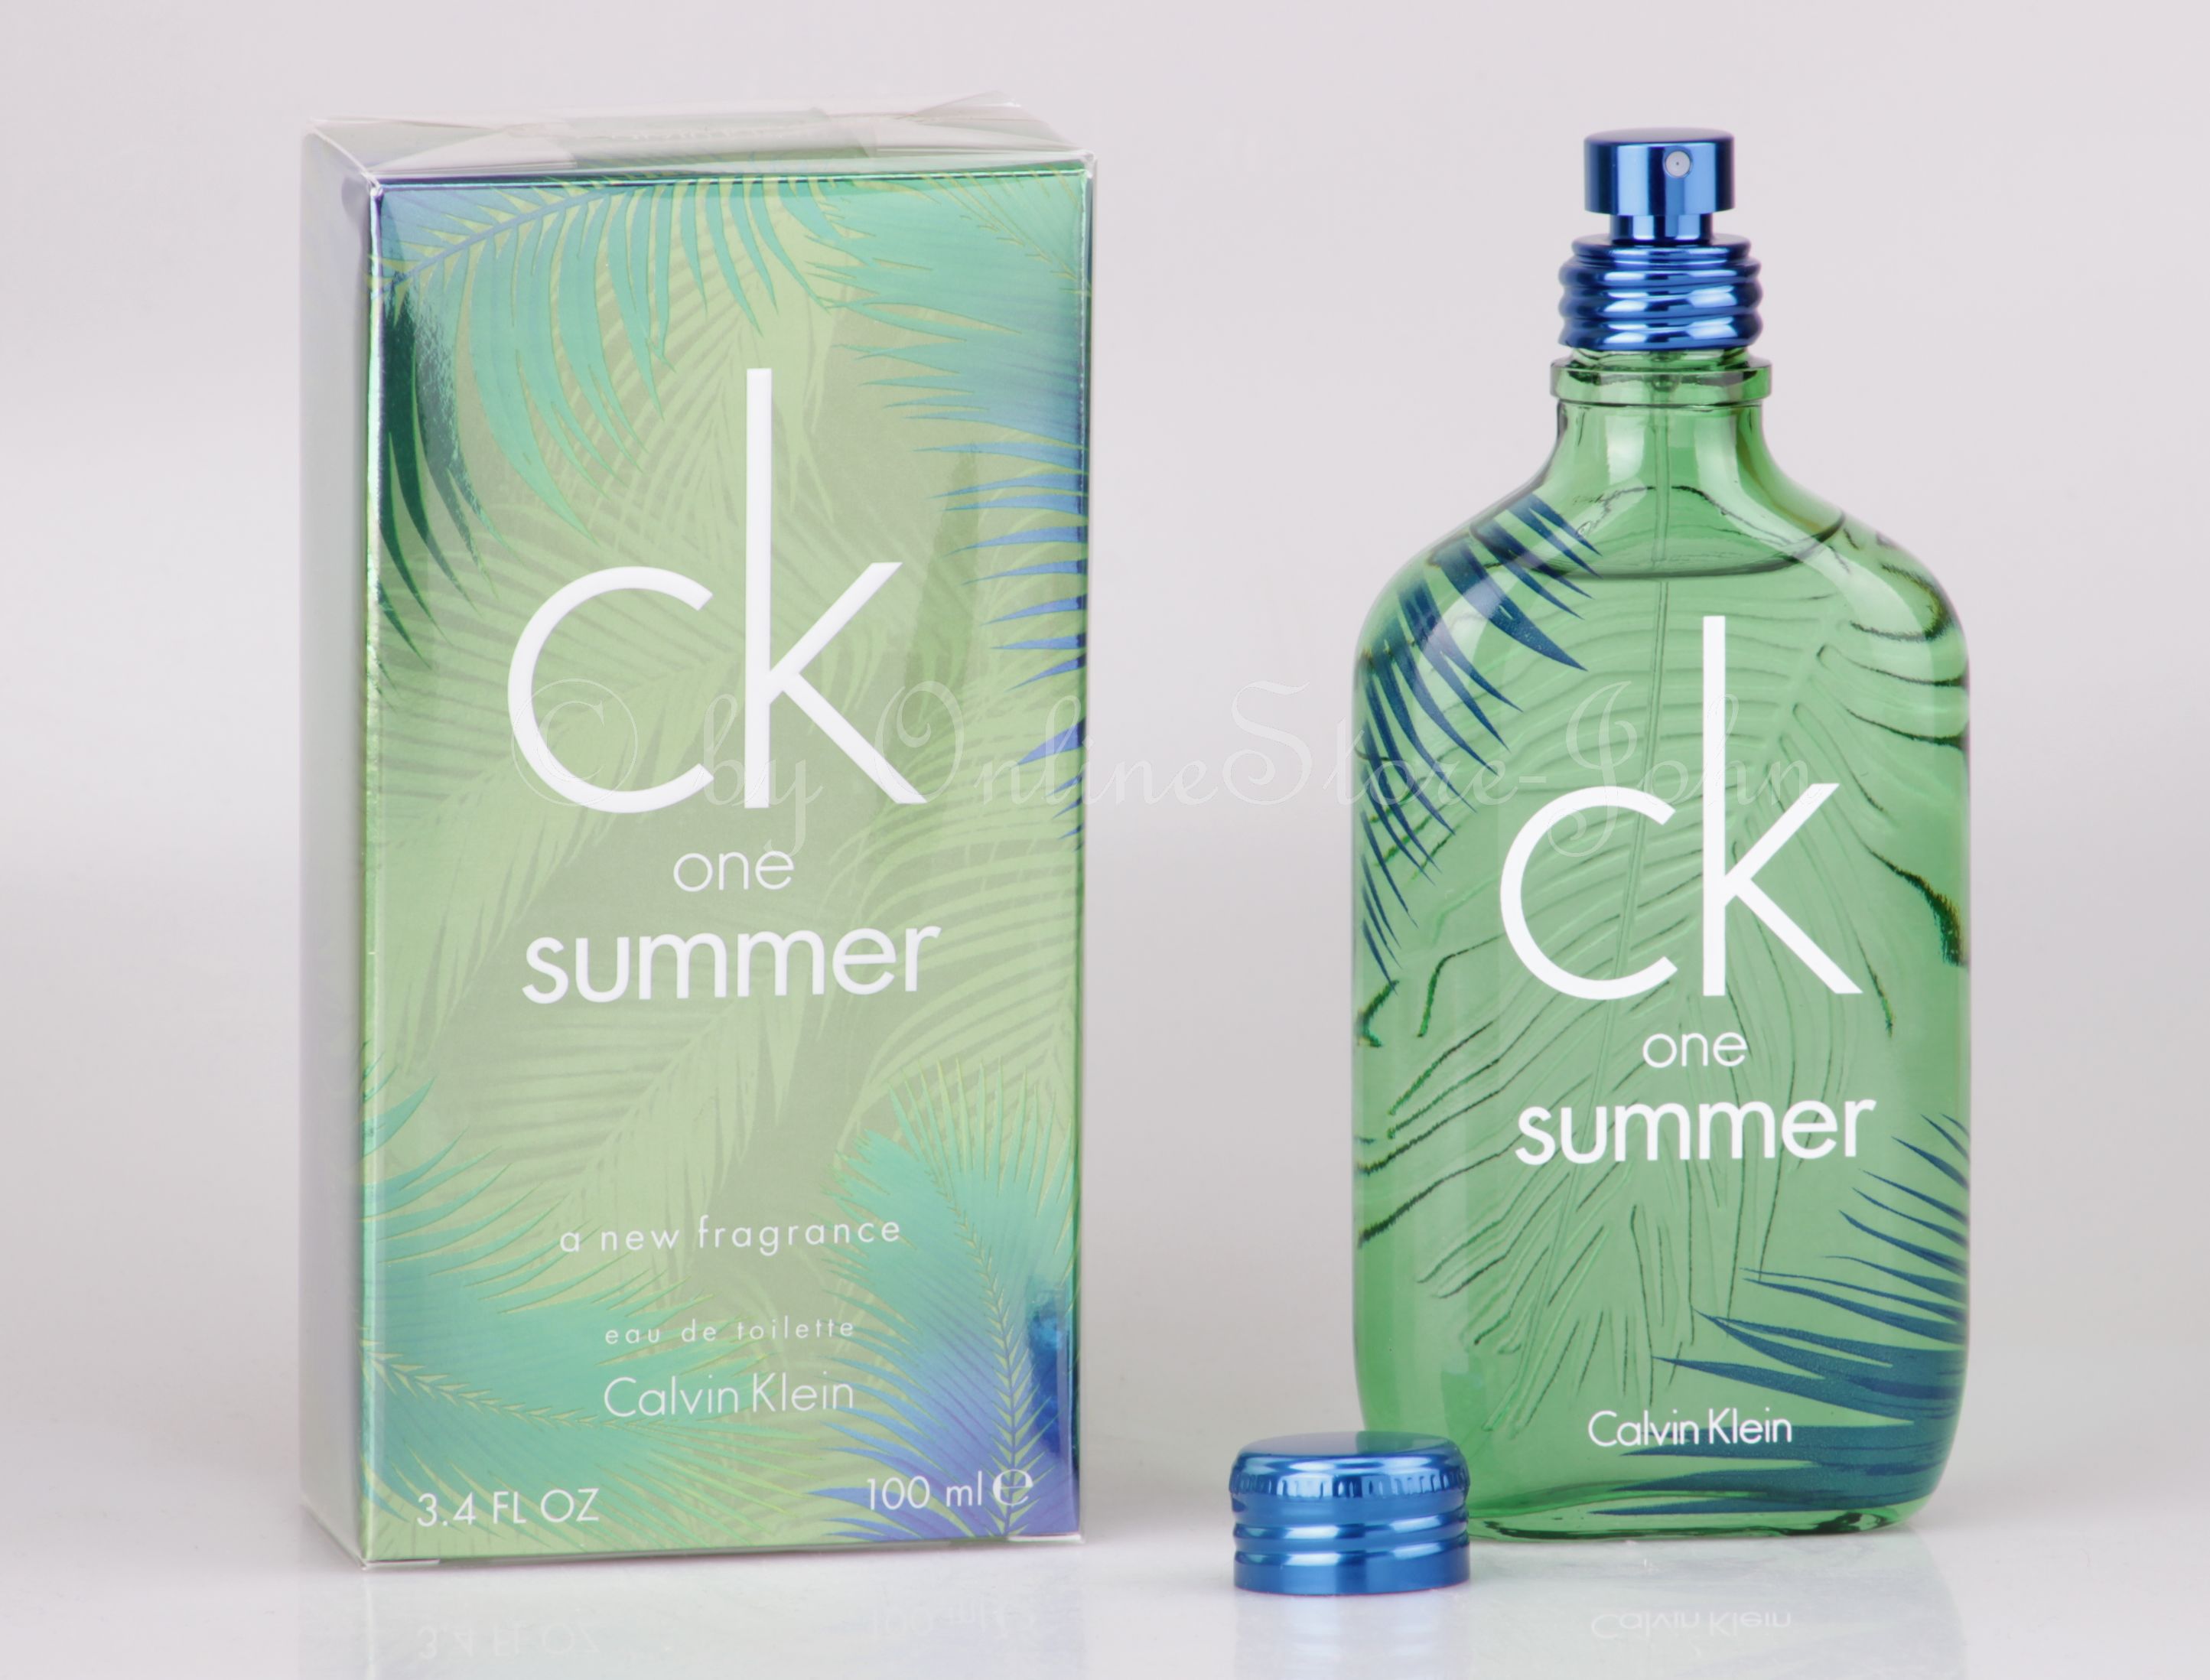 Calvin Klein - CK One Summer 2016 - 100 ml EDT Eau De Toilette NIP | eBay